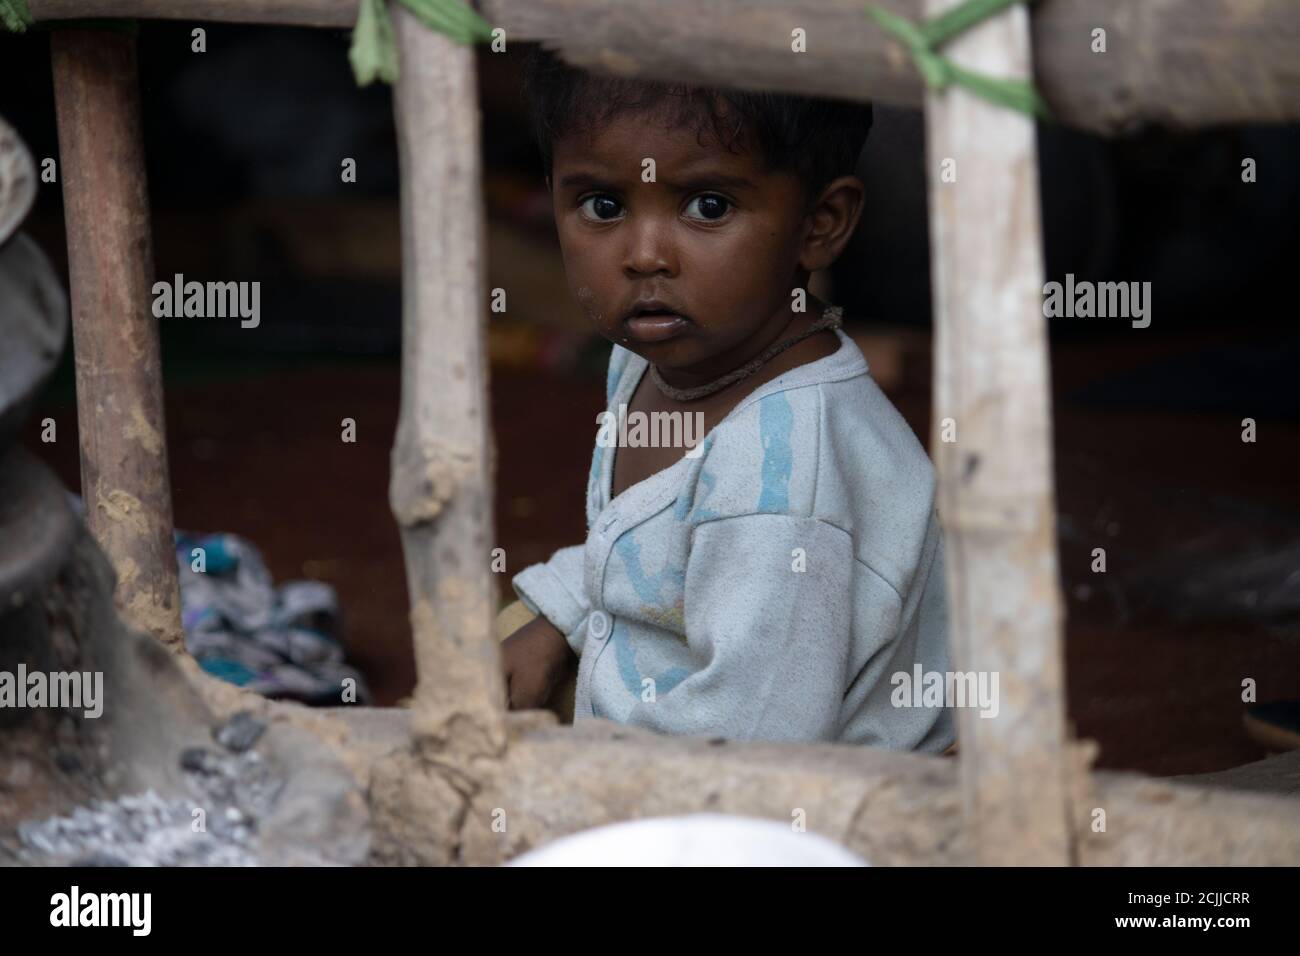 Dehradun, Uttarakhand/India - September 08 2020: Little girl from poor family facing camera. Stock Photo